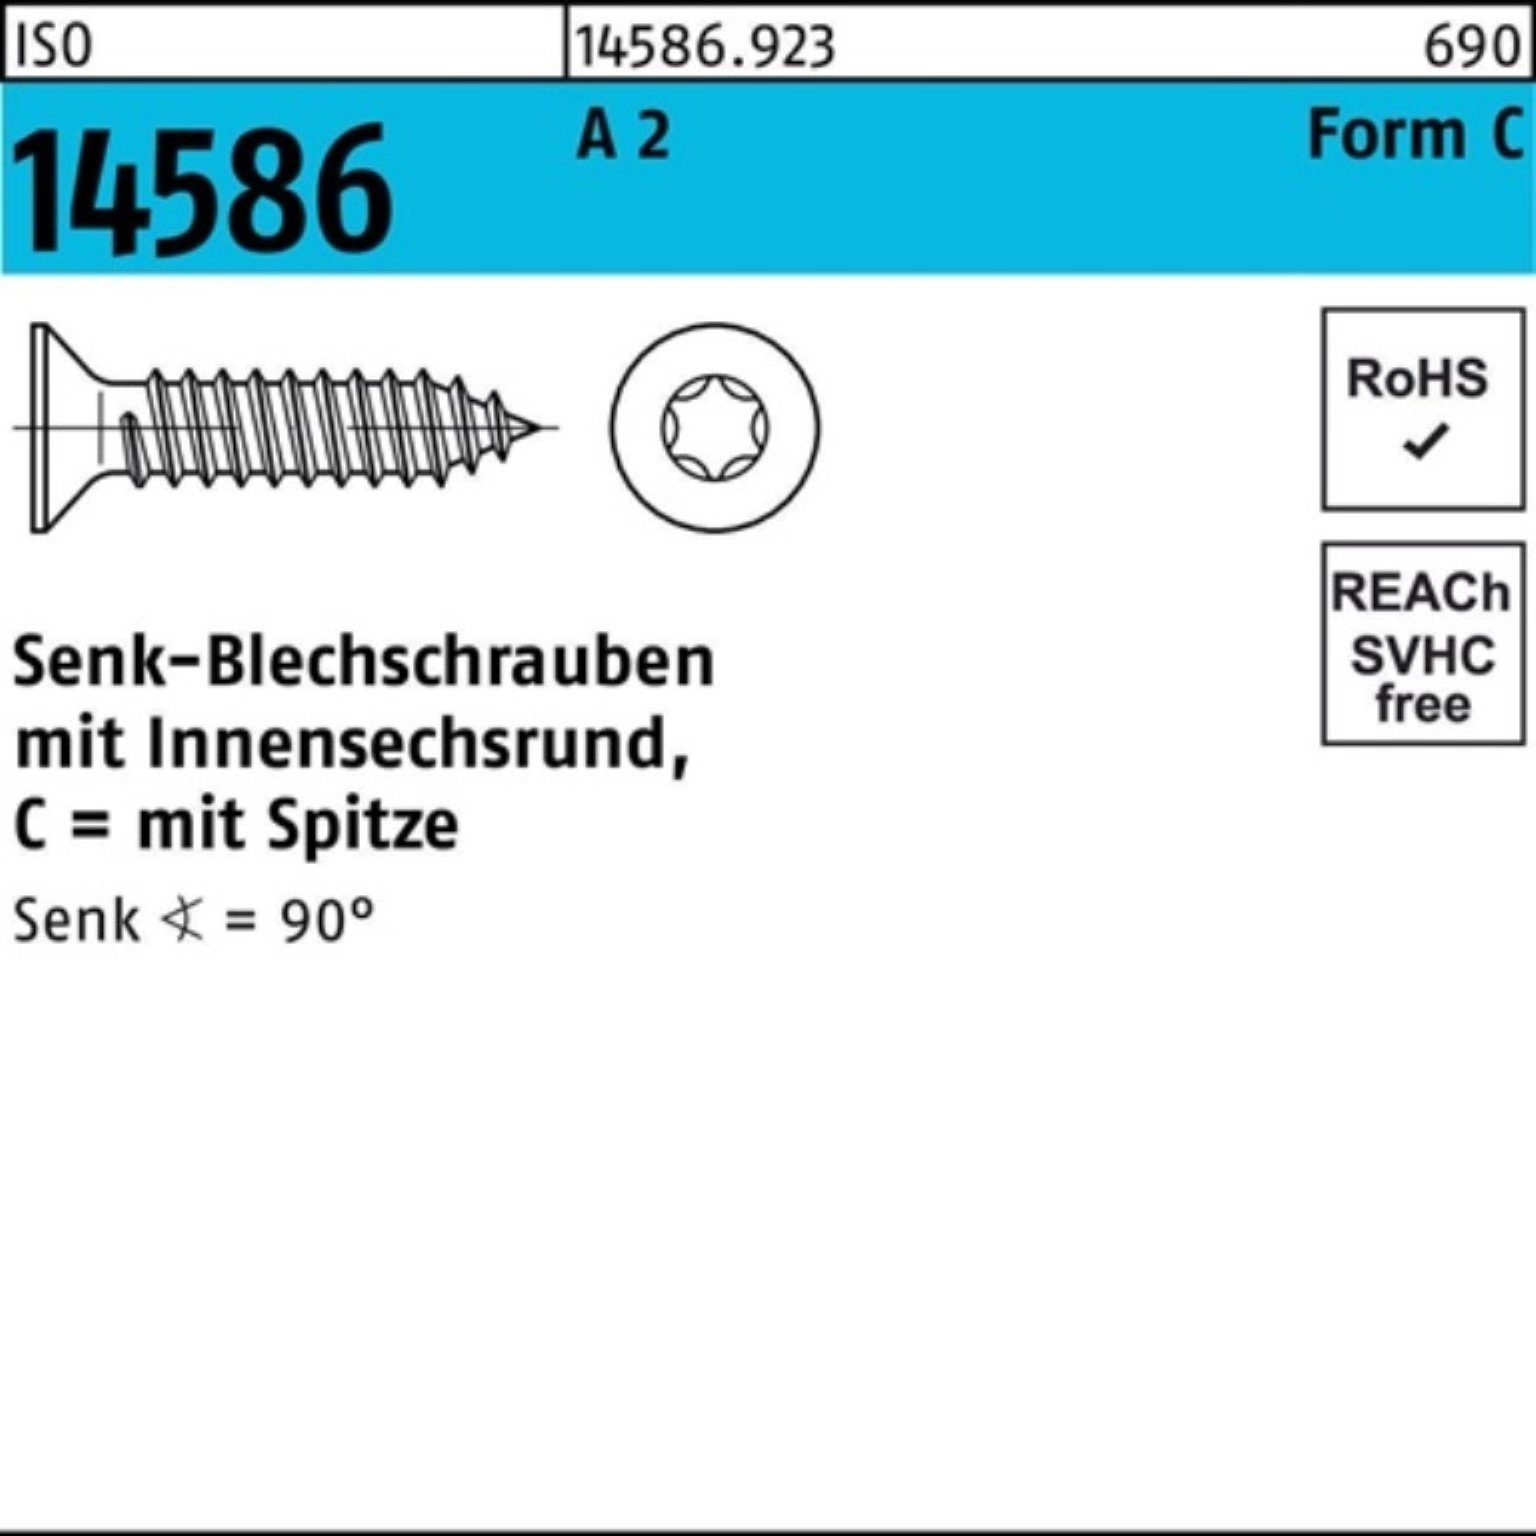 Reyher Schraube 500er Pack Senkblechschraube ISO 14586 ISR/Spitze 4,8x 22 -C T25 A 2 5